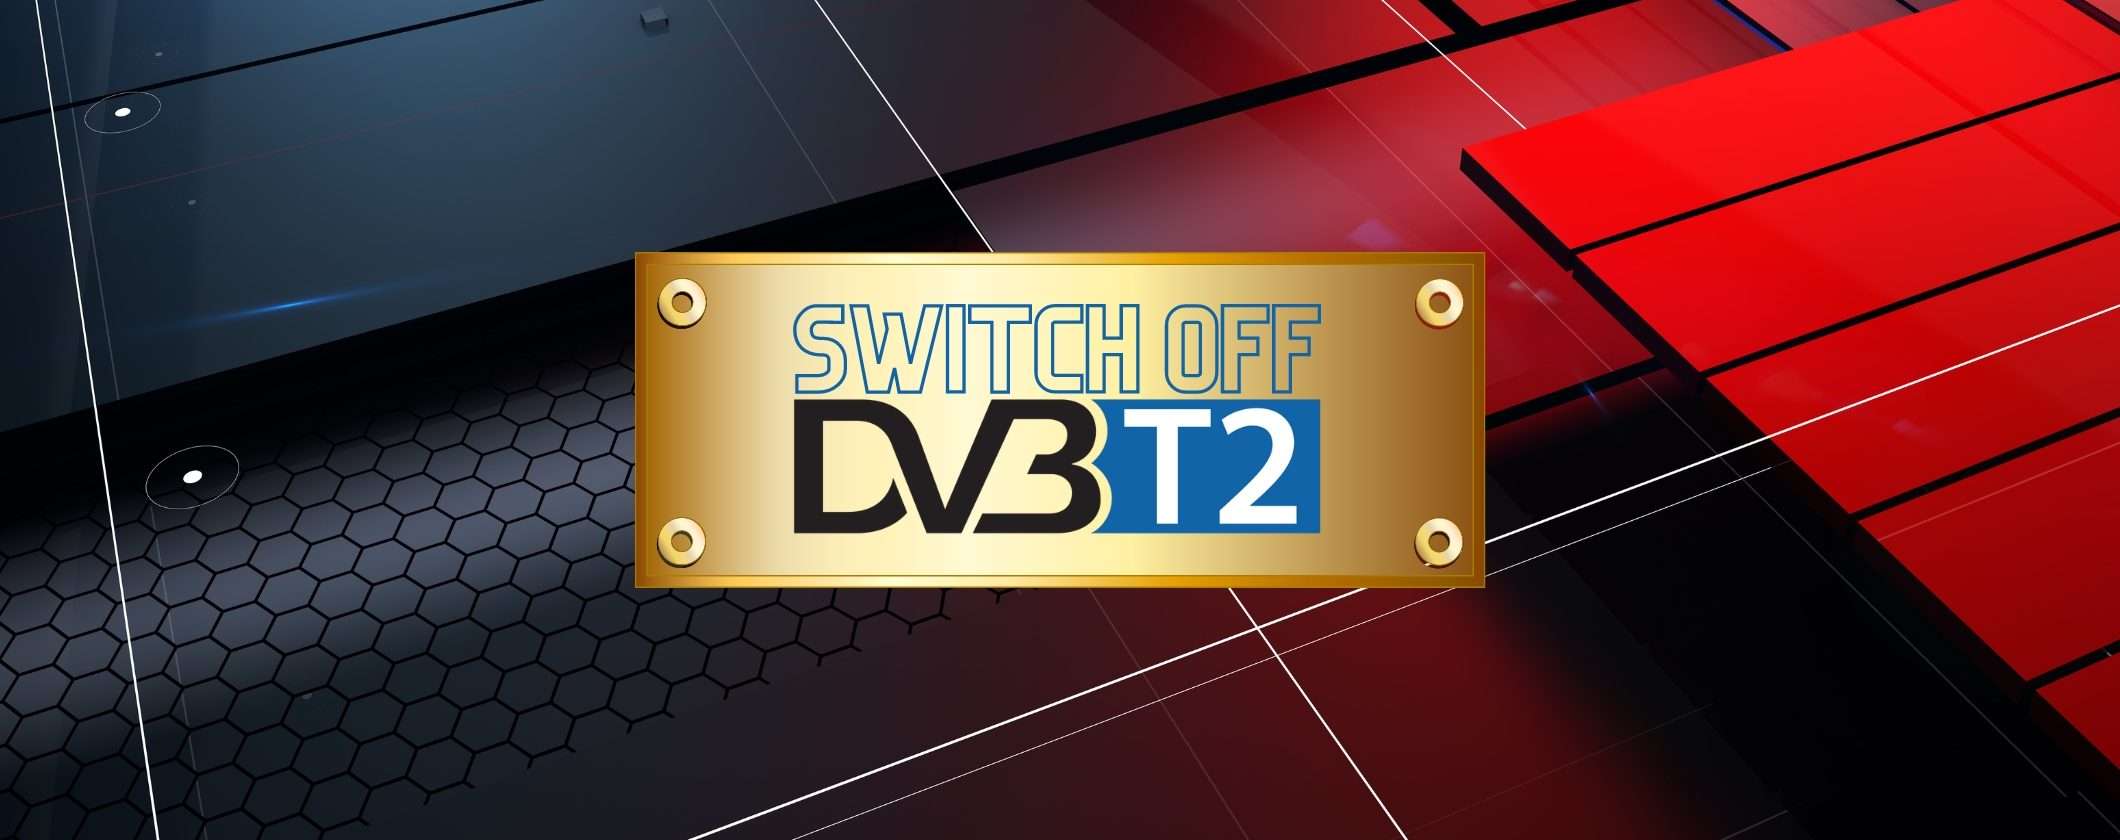 Digitale terrestre: il Governo vuole lo switch off al DVB-T2